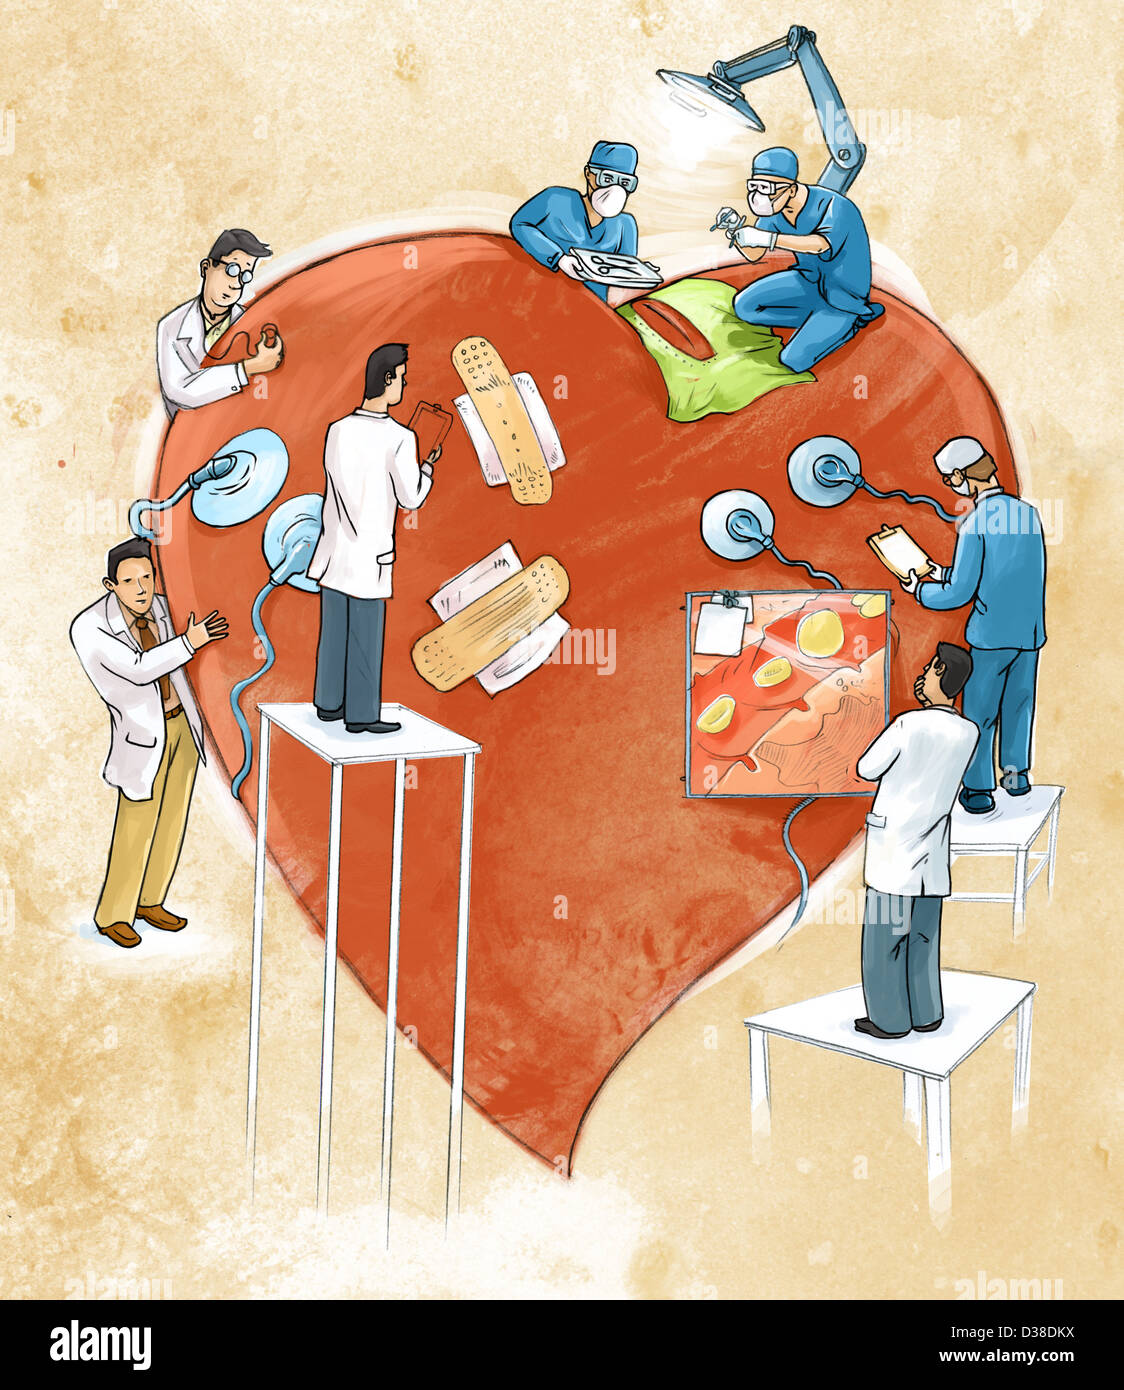 Image d'illustration de médecins faisant la chirurgie cardiaque Banque D'Images